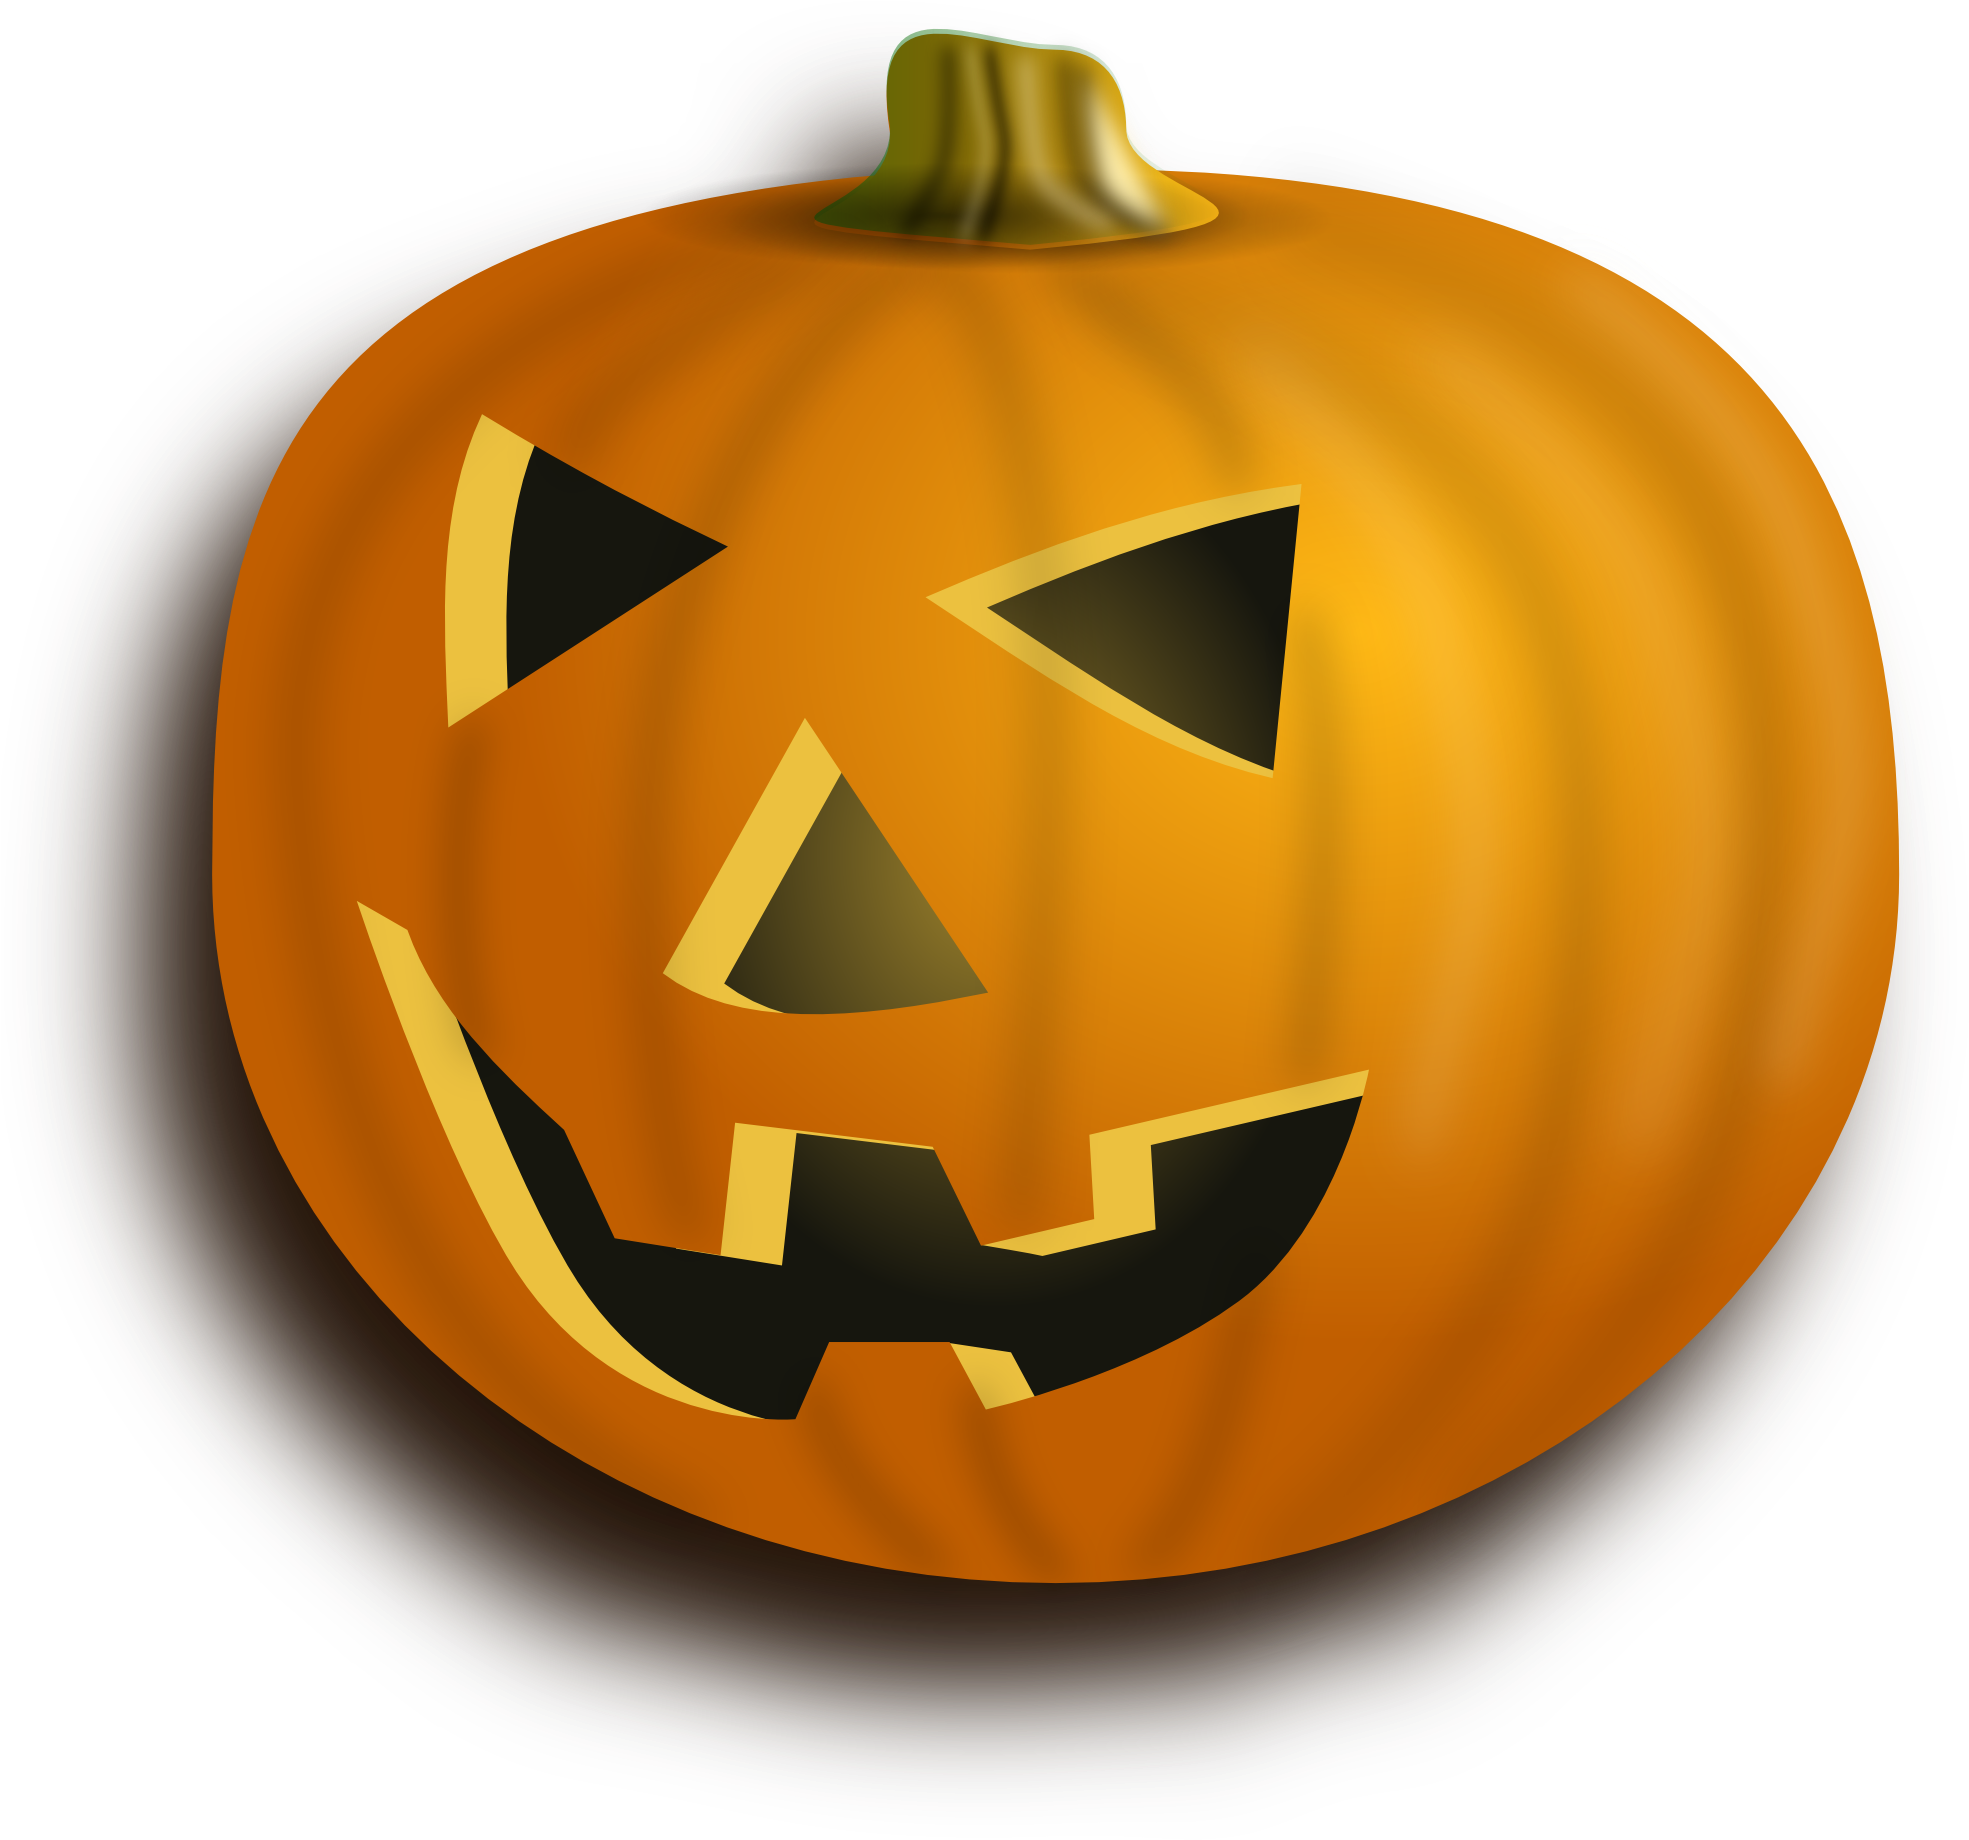 Jack-O’-Lantern Carved Pumpkin PNG Image Background